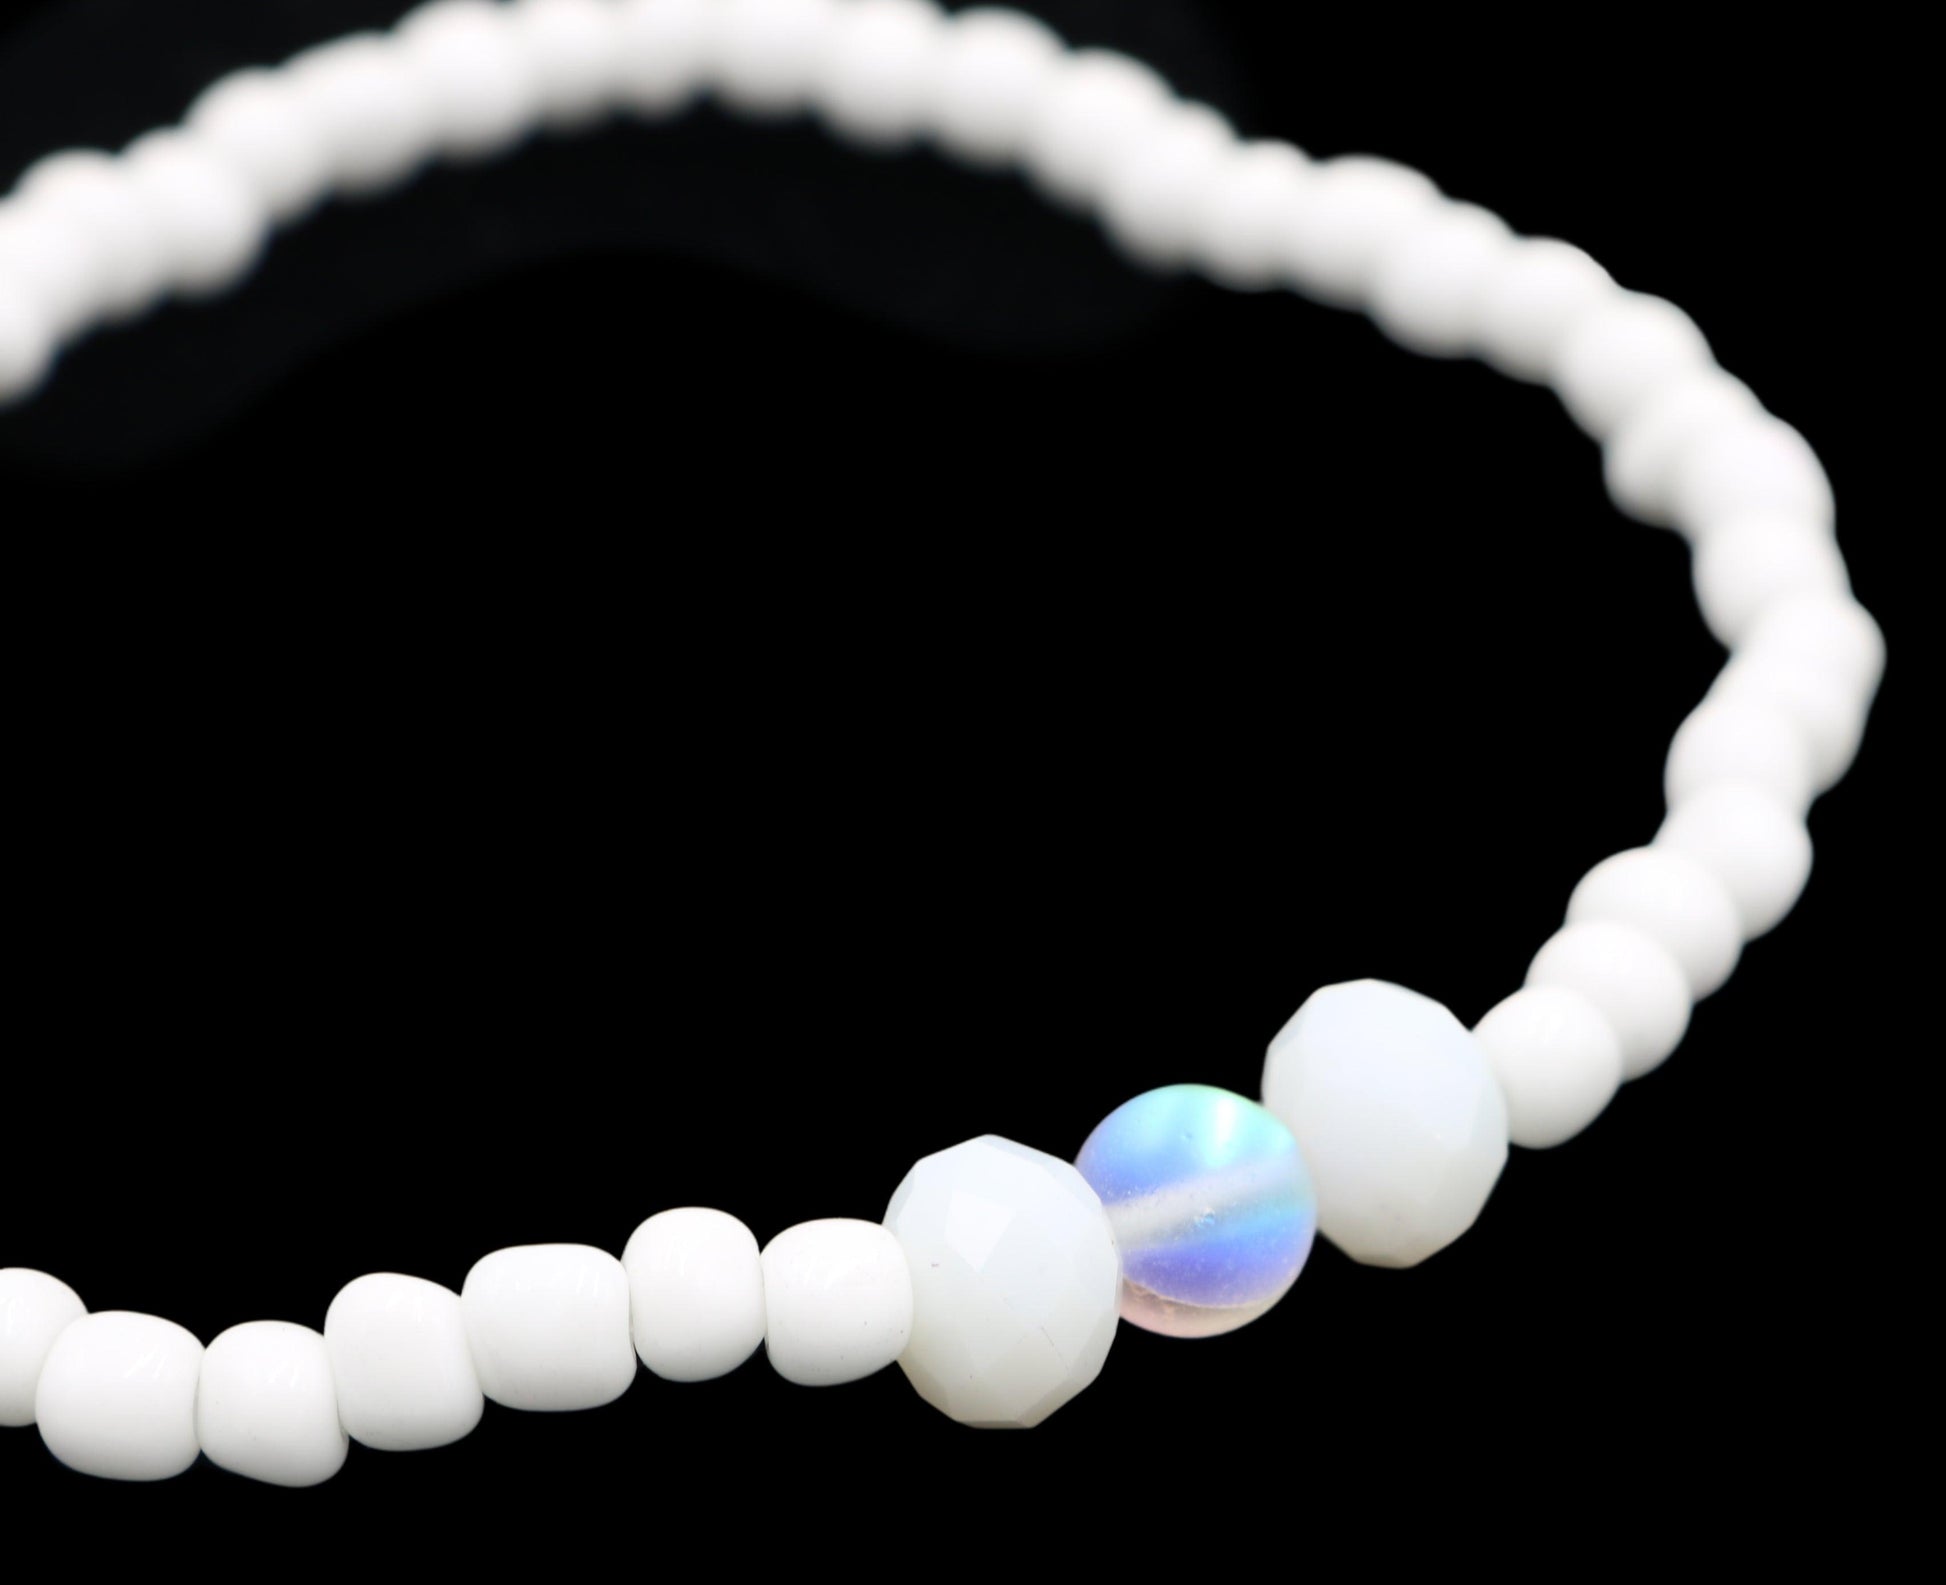 White Sea Foam and Mermaid Scales Women's Glass Bracelet - Monkeysmojo